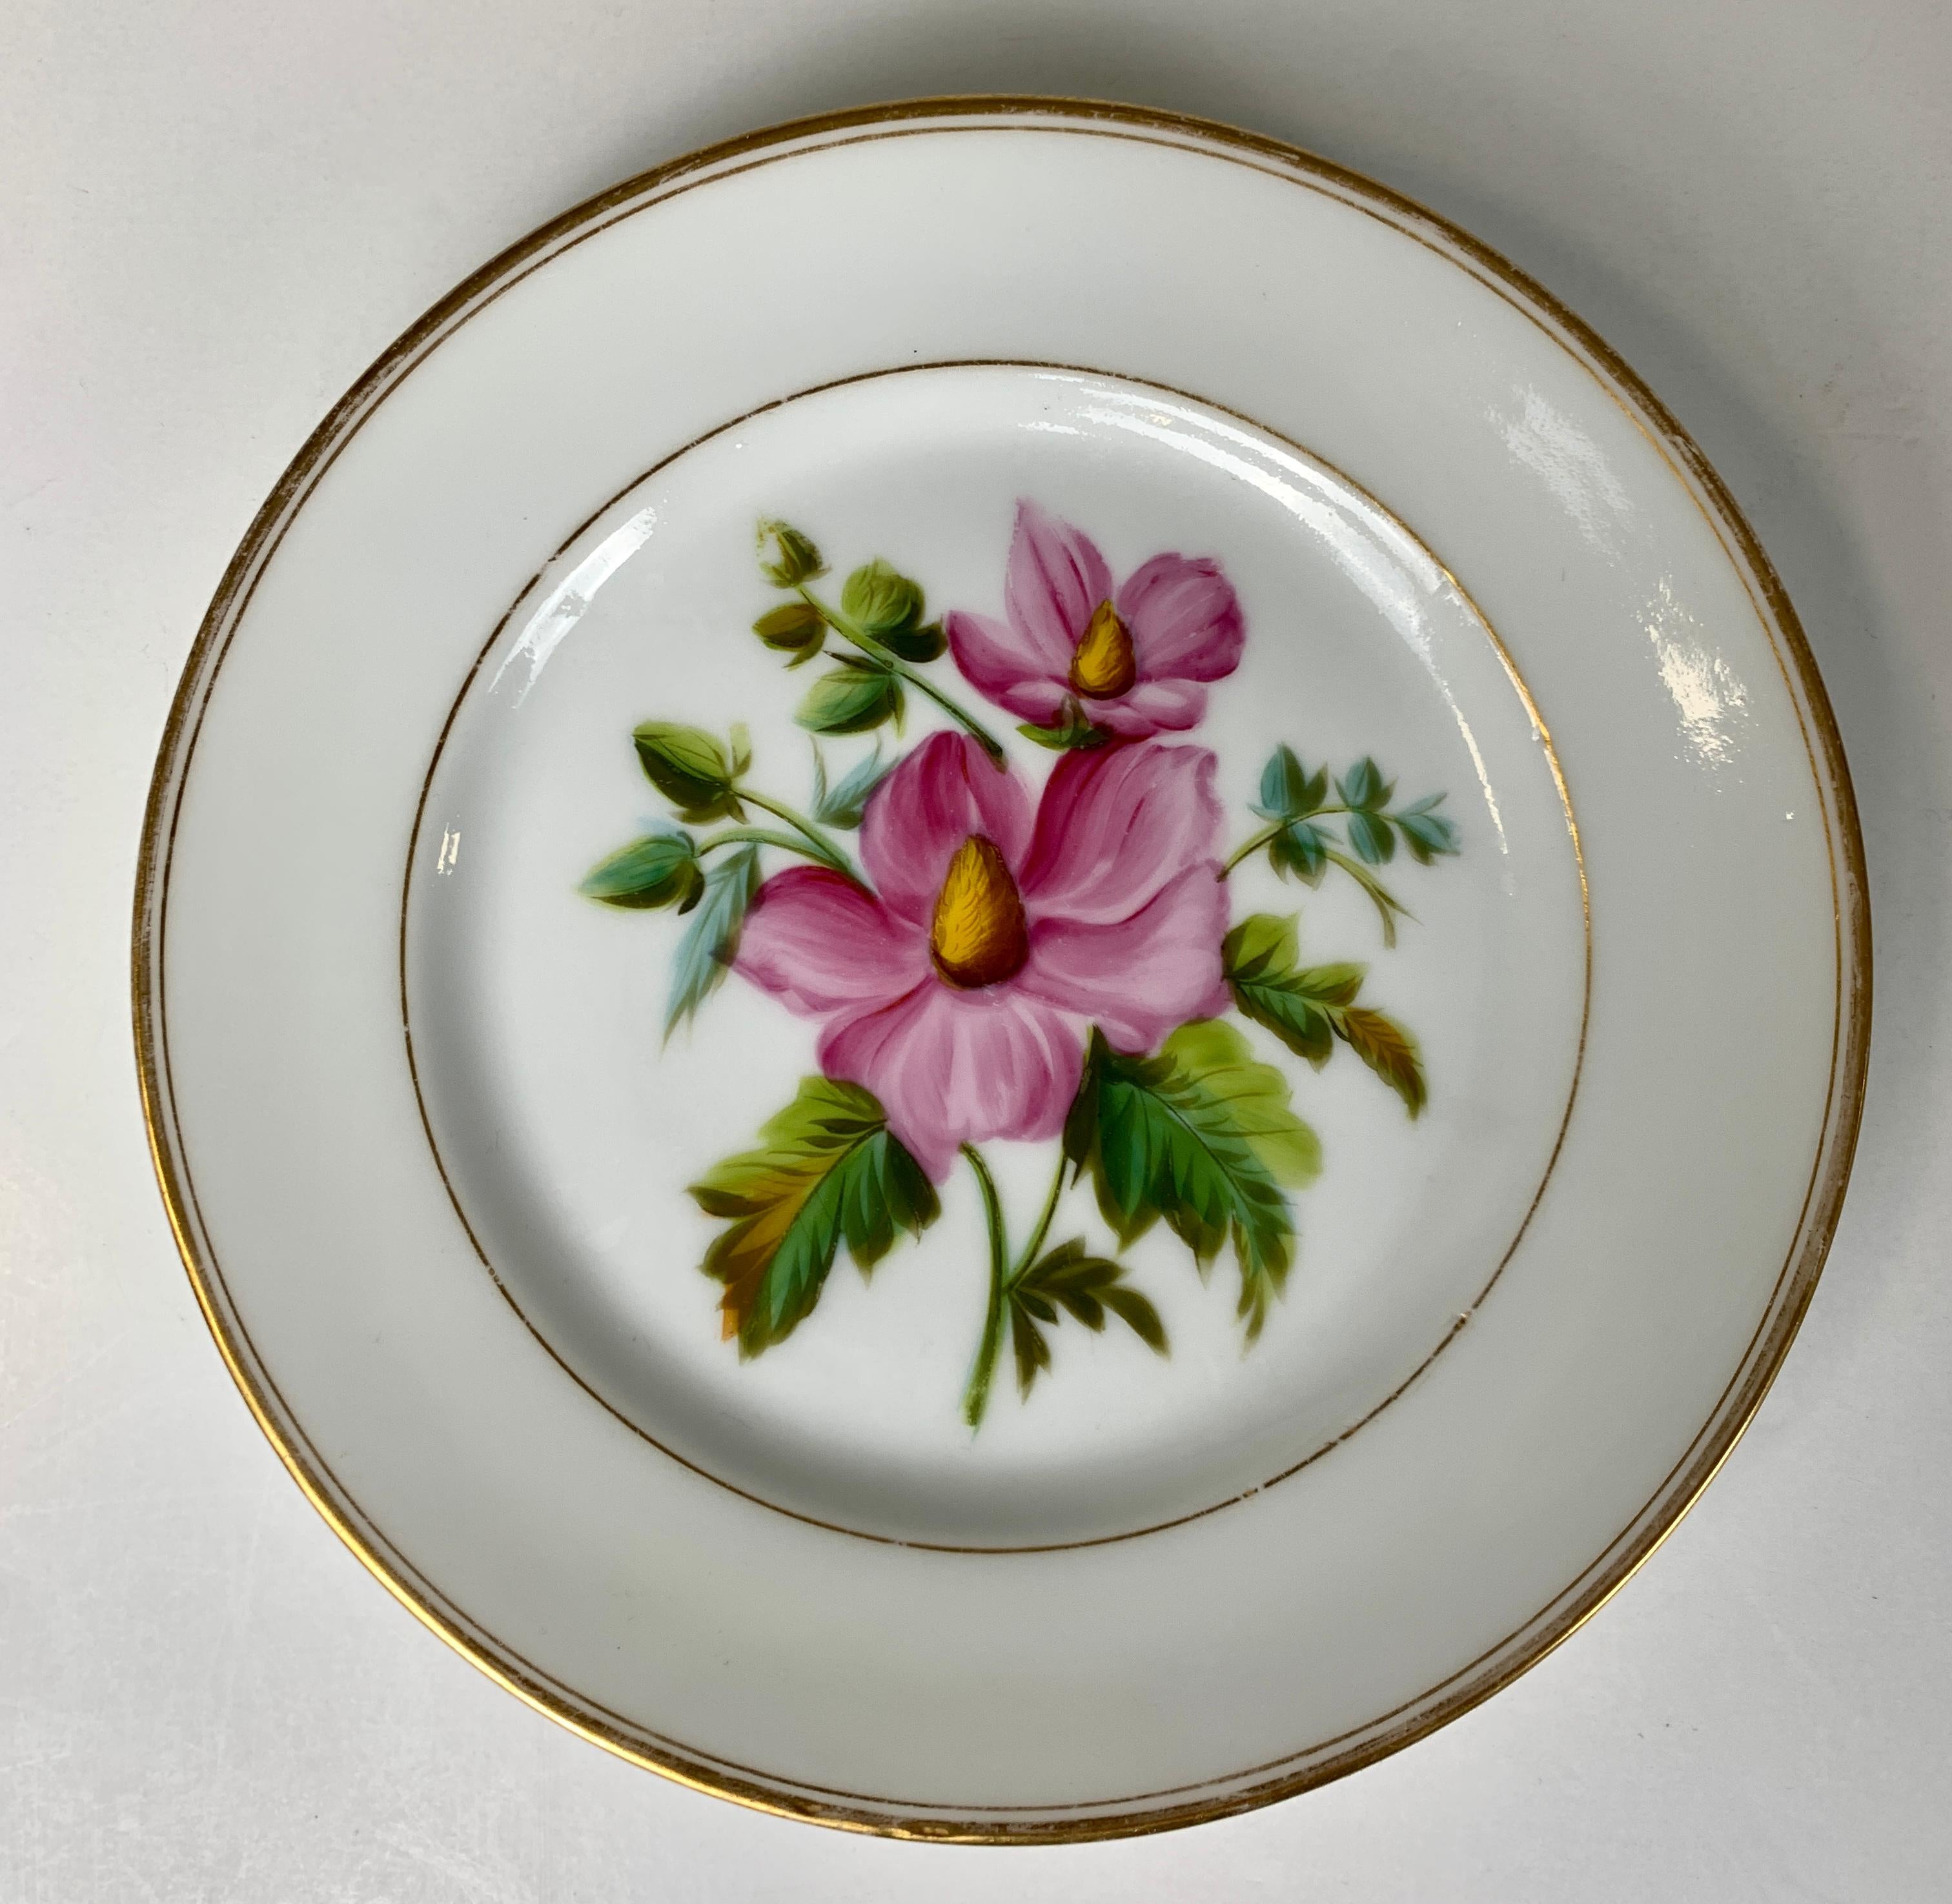 Dieses Paar botanischer Schalen aus Pariser Porzellan zeigt jeweils eine einzelne exquisite Pflanze mit lila-rosa Blüten.
Das Geschirr wurde von Feuillet hergestellt und Mitte des 19. Jahrhunderts in Frankreich von Chevet vertrieben. 
Beide Gerichte